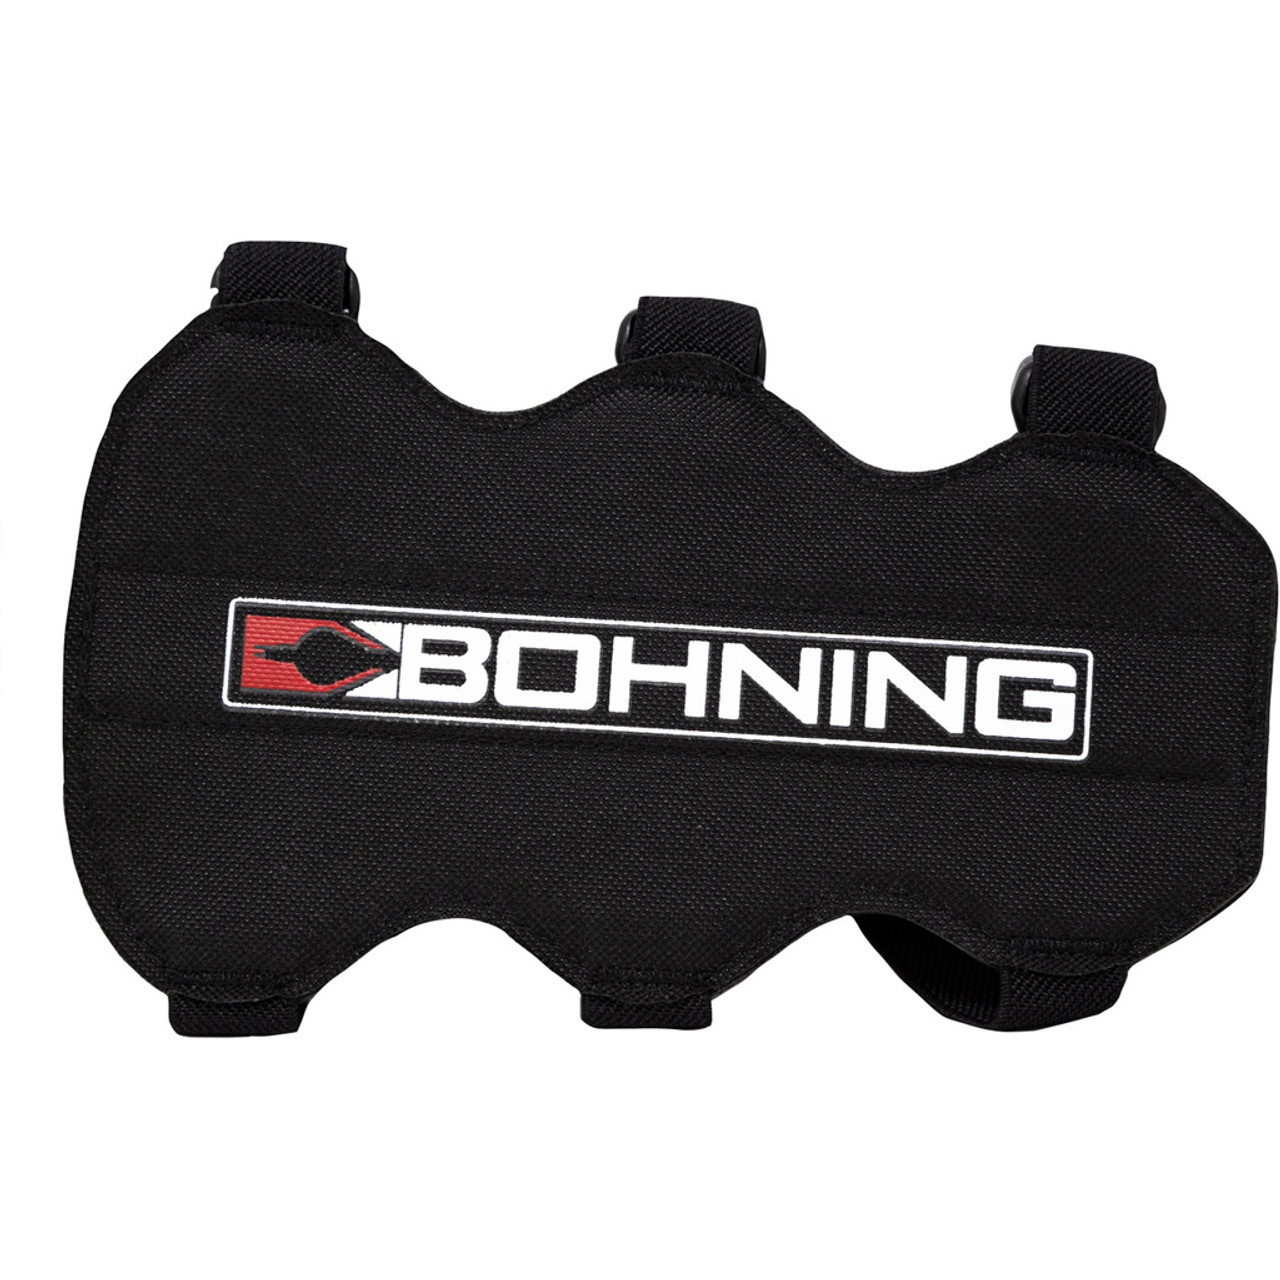 Bohning - 1689 - Bohning 3 Strap Armguard Black